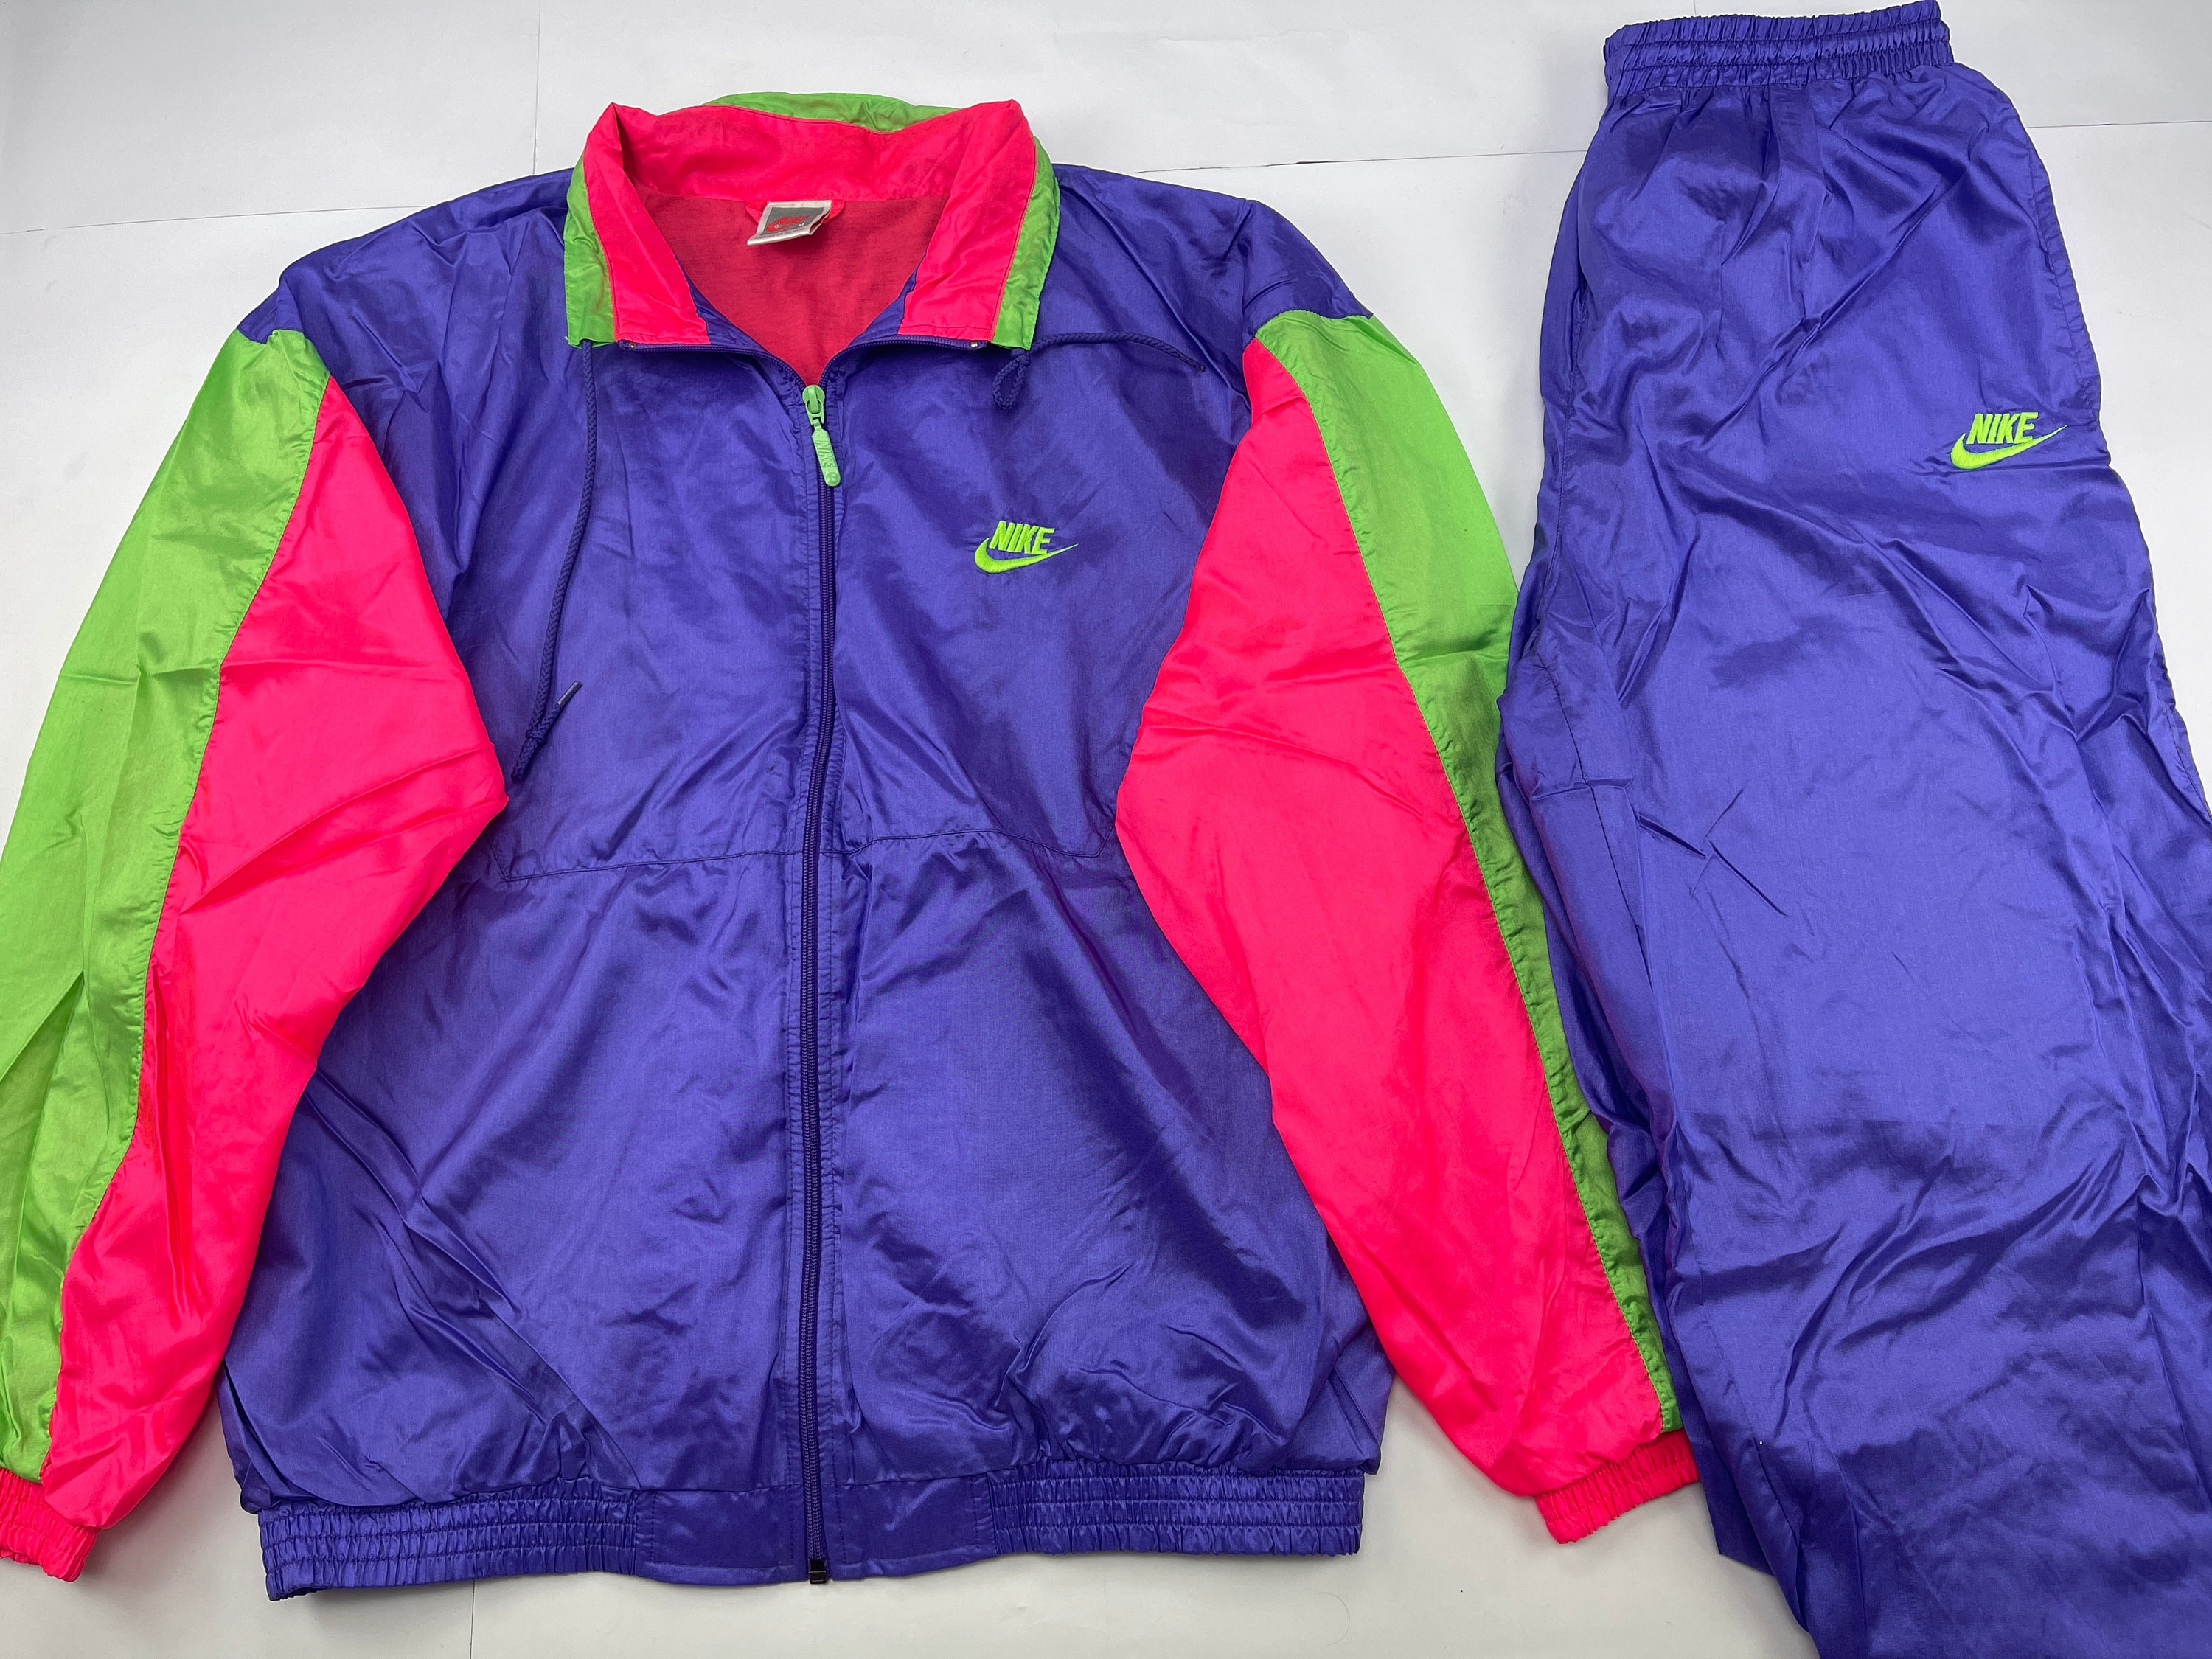 ondernemen Stressvol Langwerpig Nike Tracksuit Neon Blue Vintage Track Suit Jacket Pants - Etsy